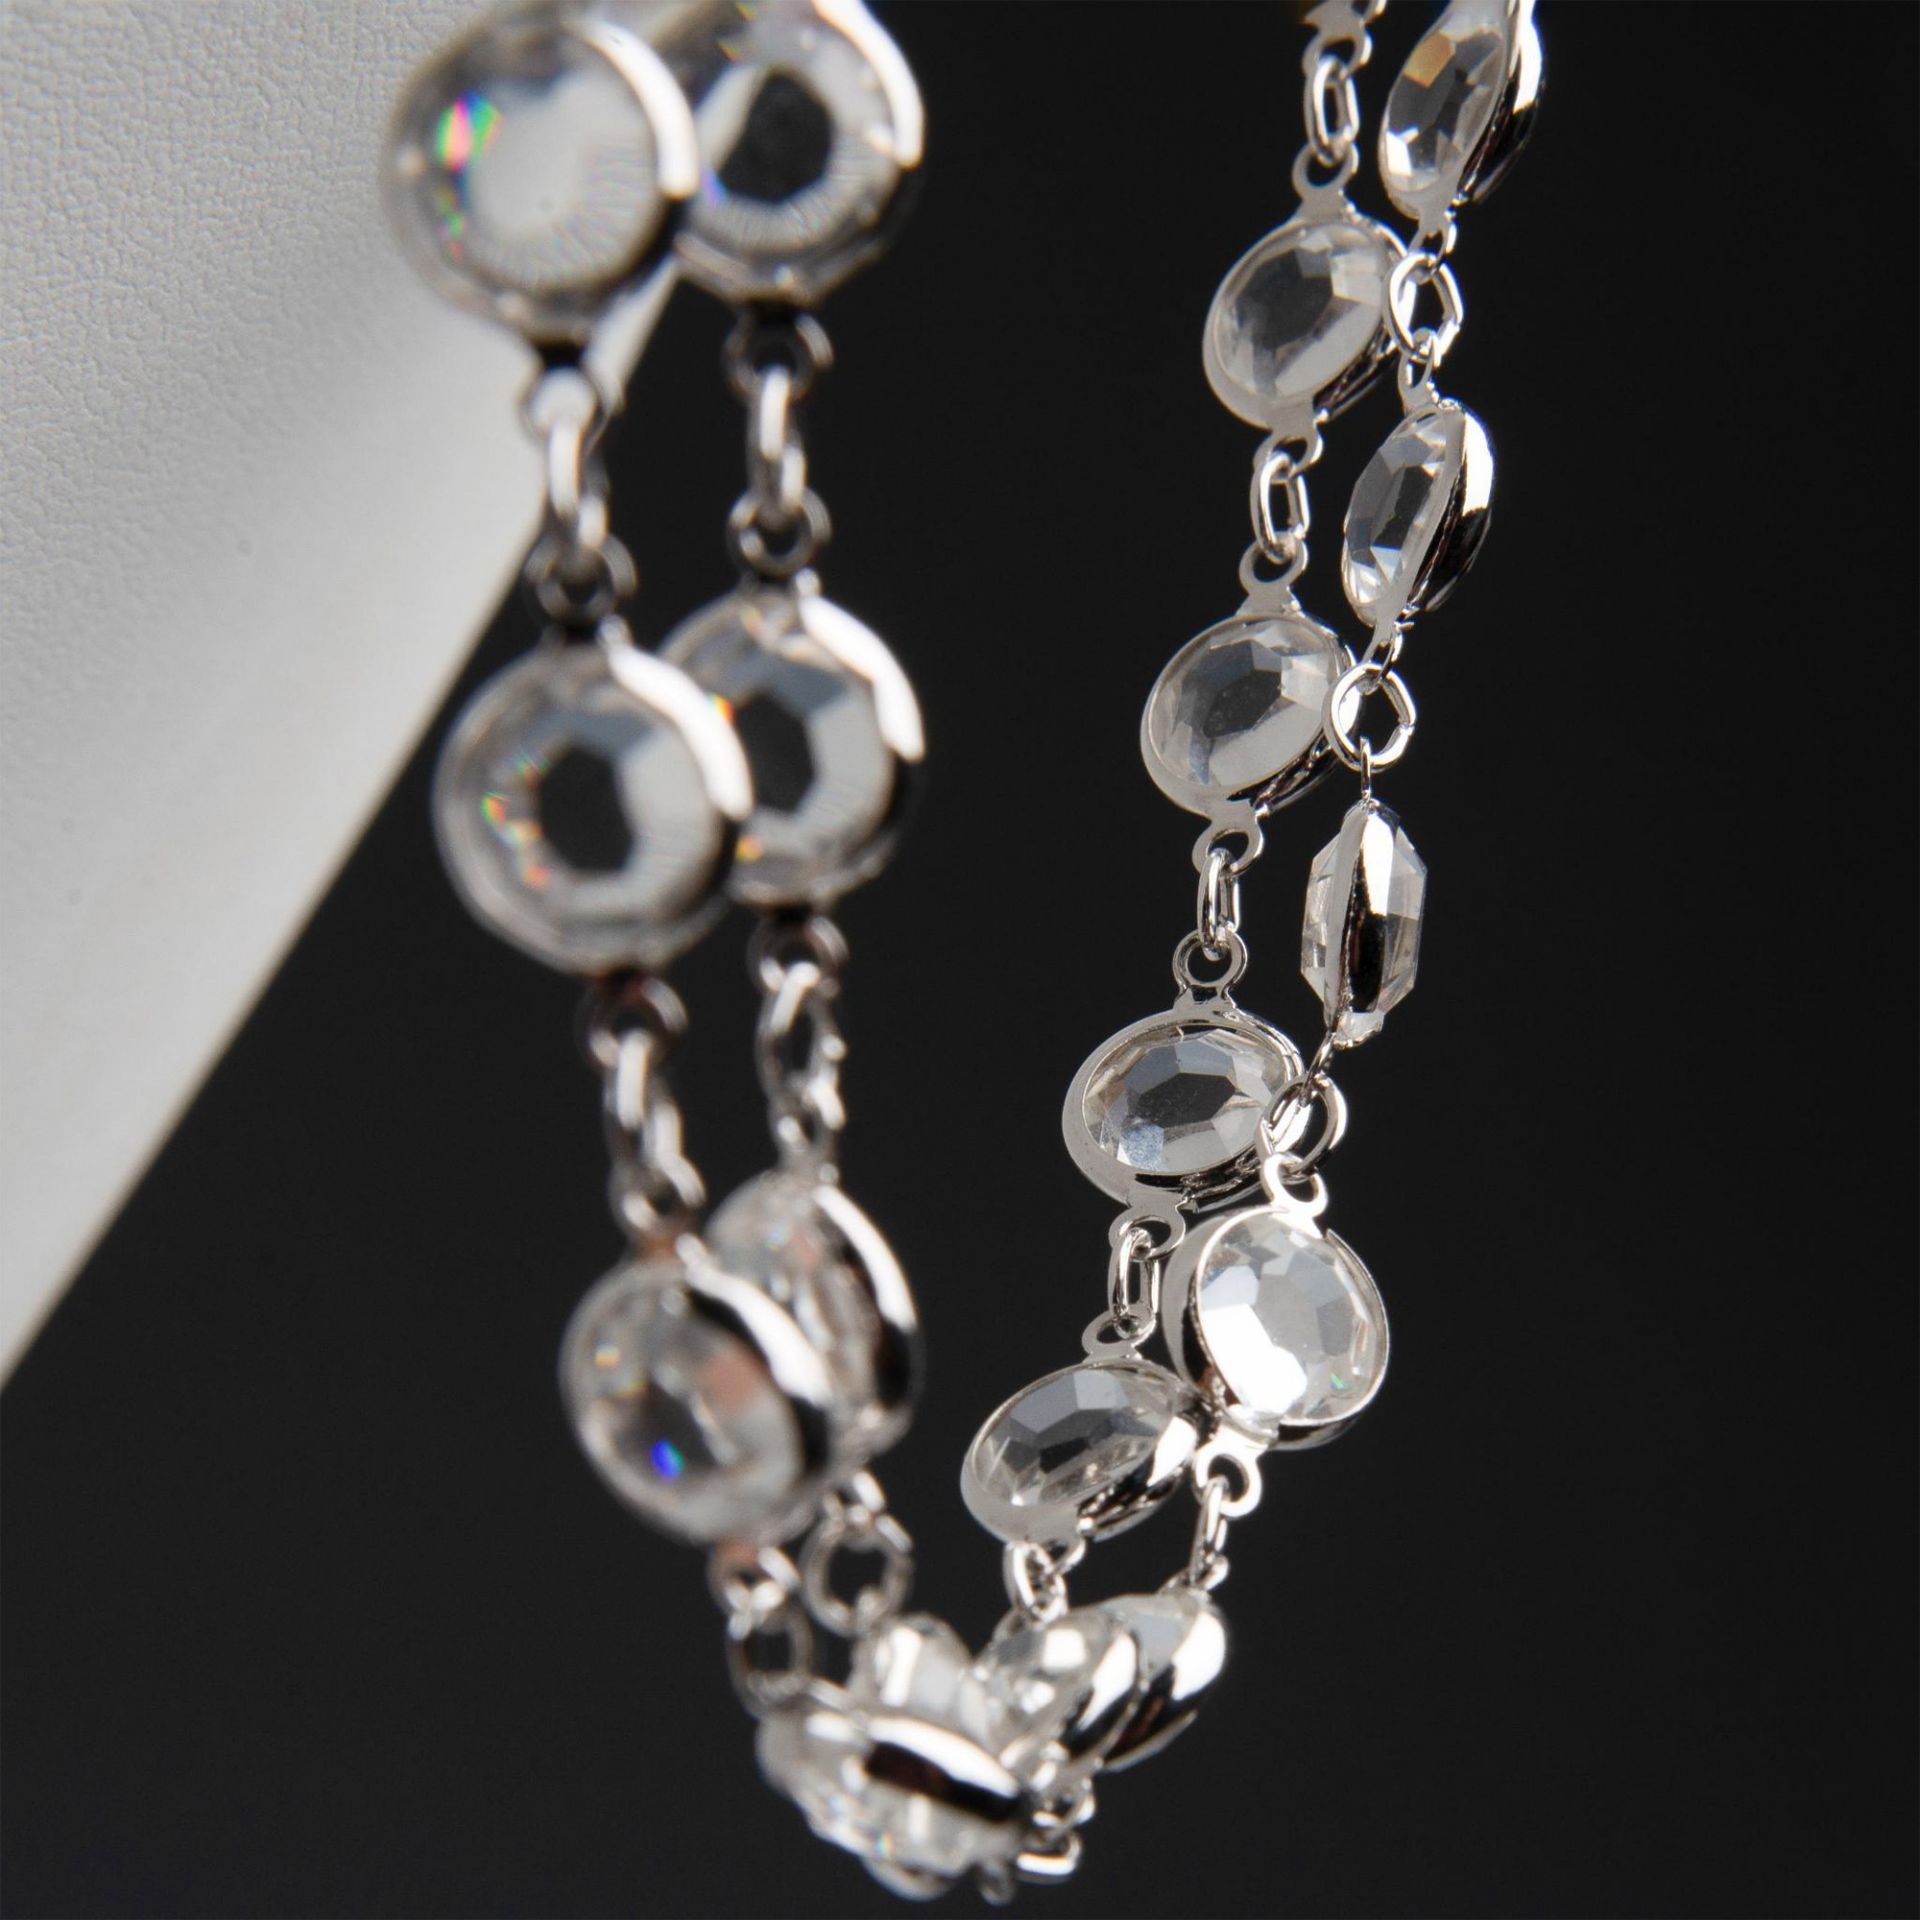 2pc Swarovski Crystal Necklace & Bracelet Set - Image 3 of 7